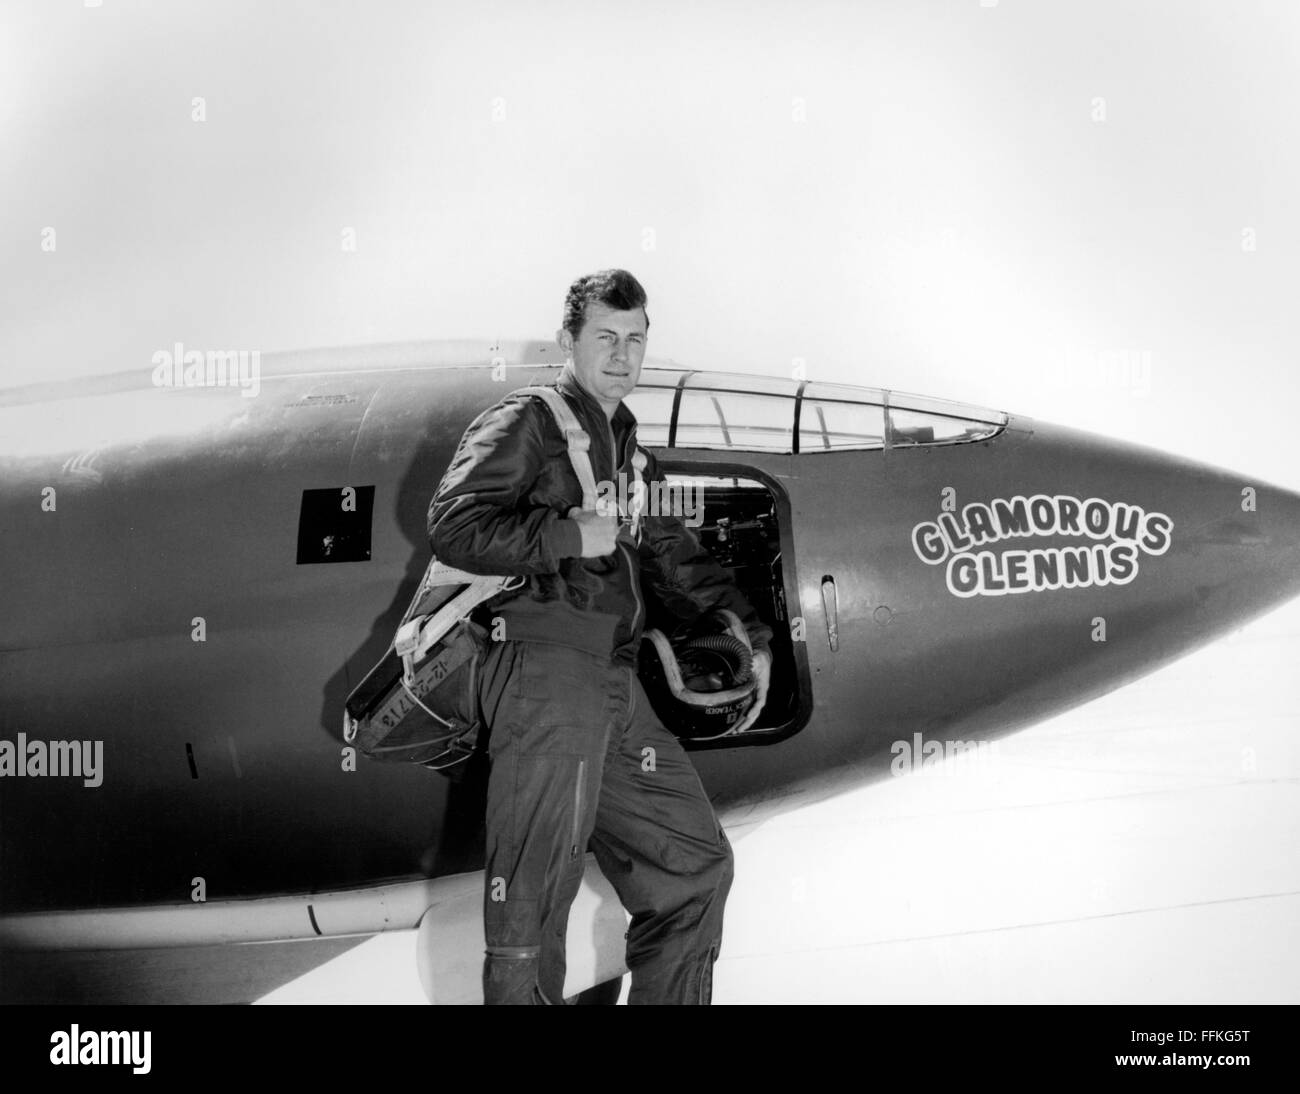 Chuck Yeager. Le pilote d'essai de l'US Air Force Chuck Yeager debout devant le Bell X-1 'Glamorous Glennis' dans laquelle il a brisé le mur du son. Photo c.1947 par USAF Banque D'Images